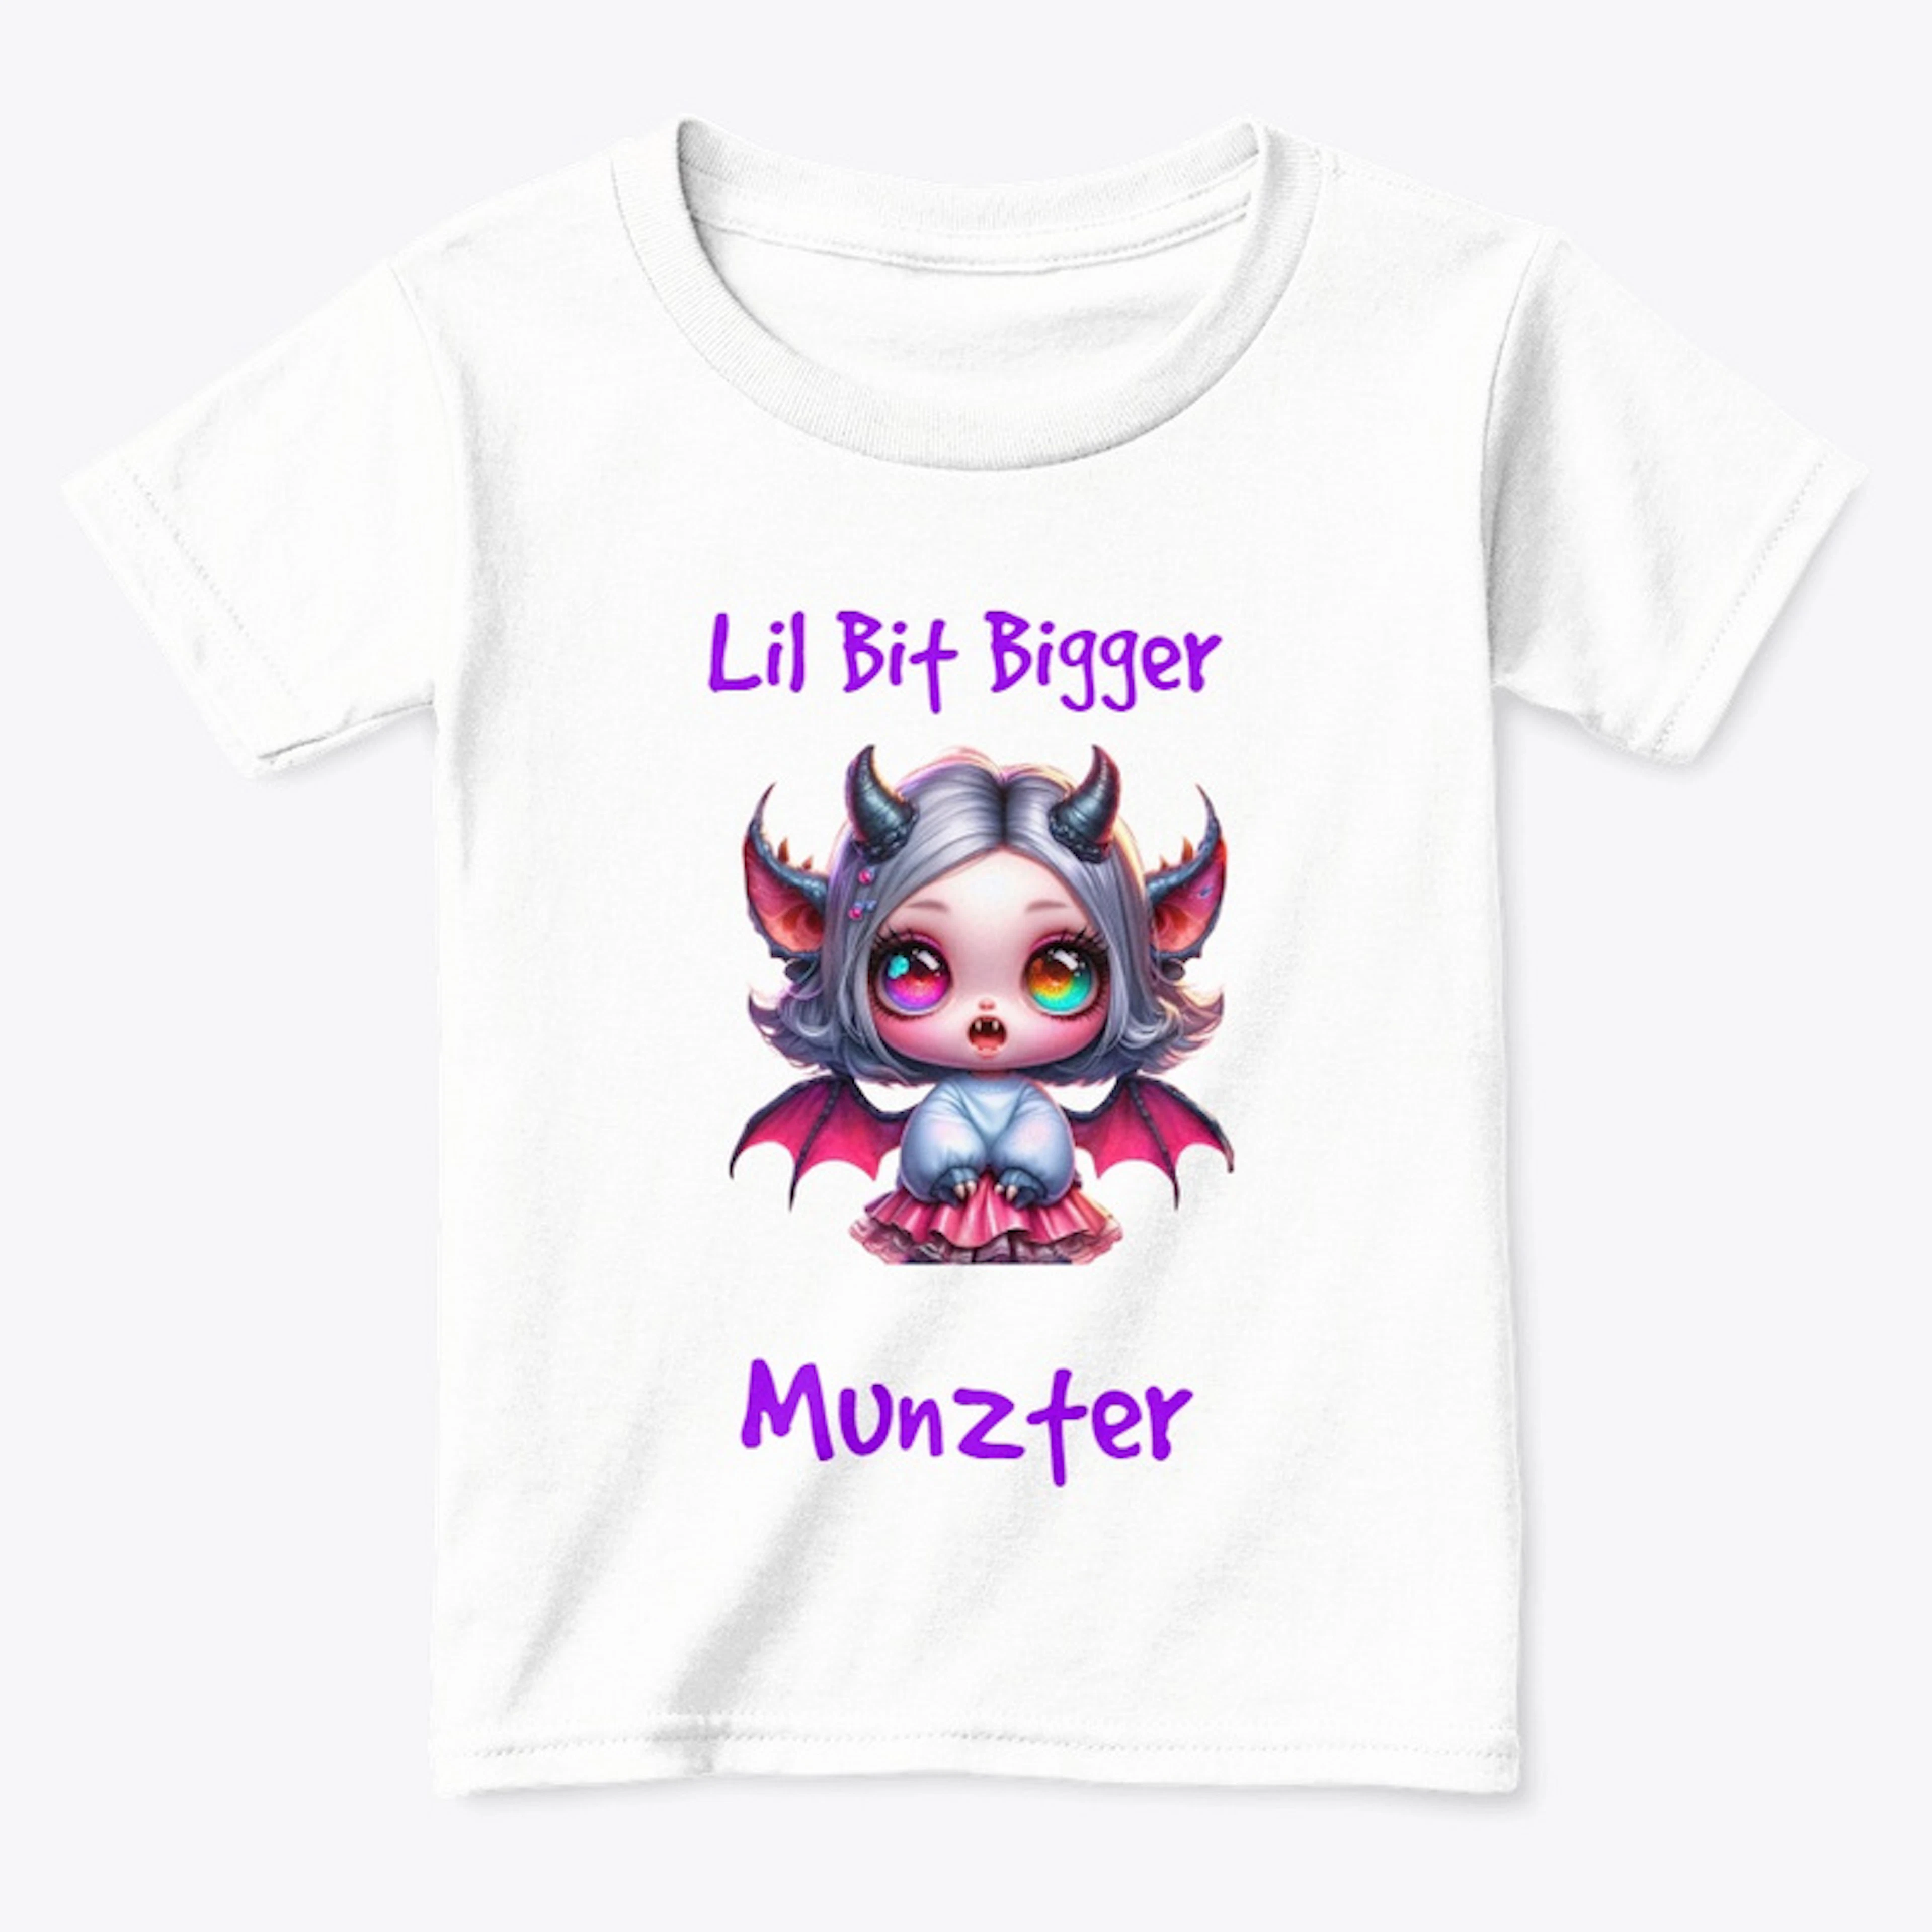 Lil Munzter